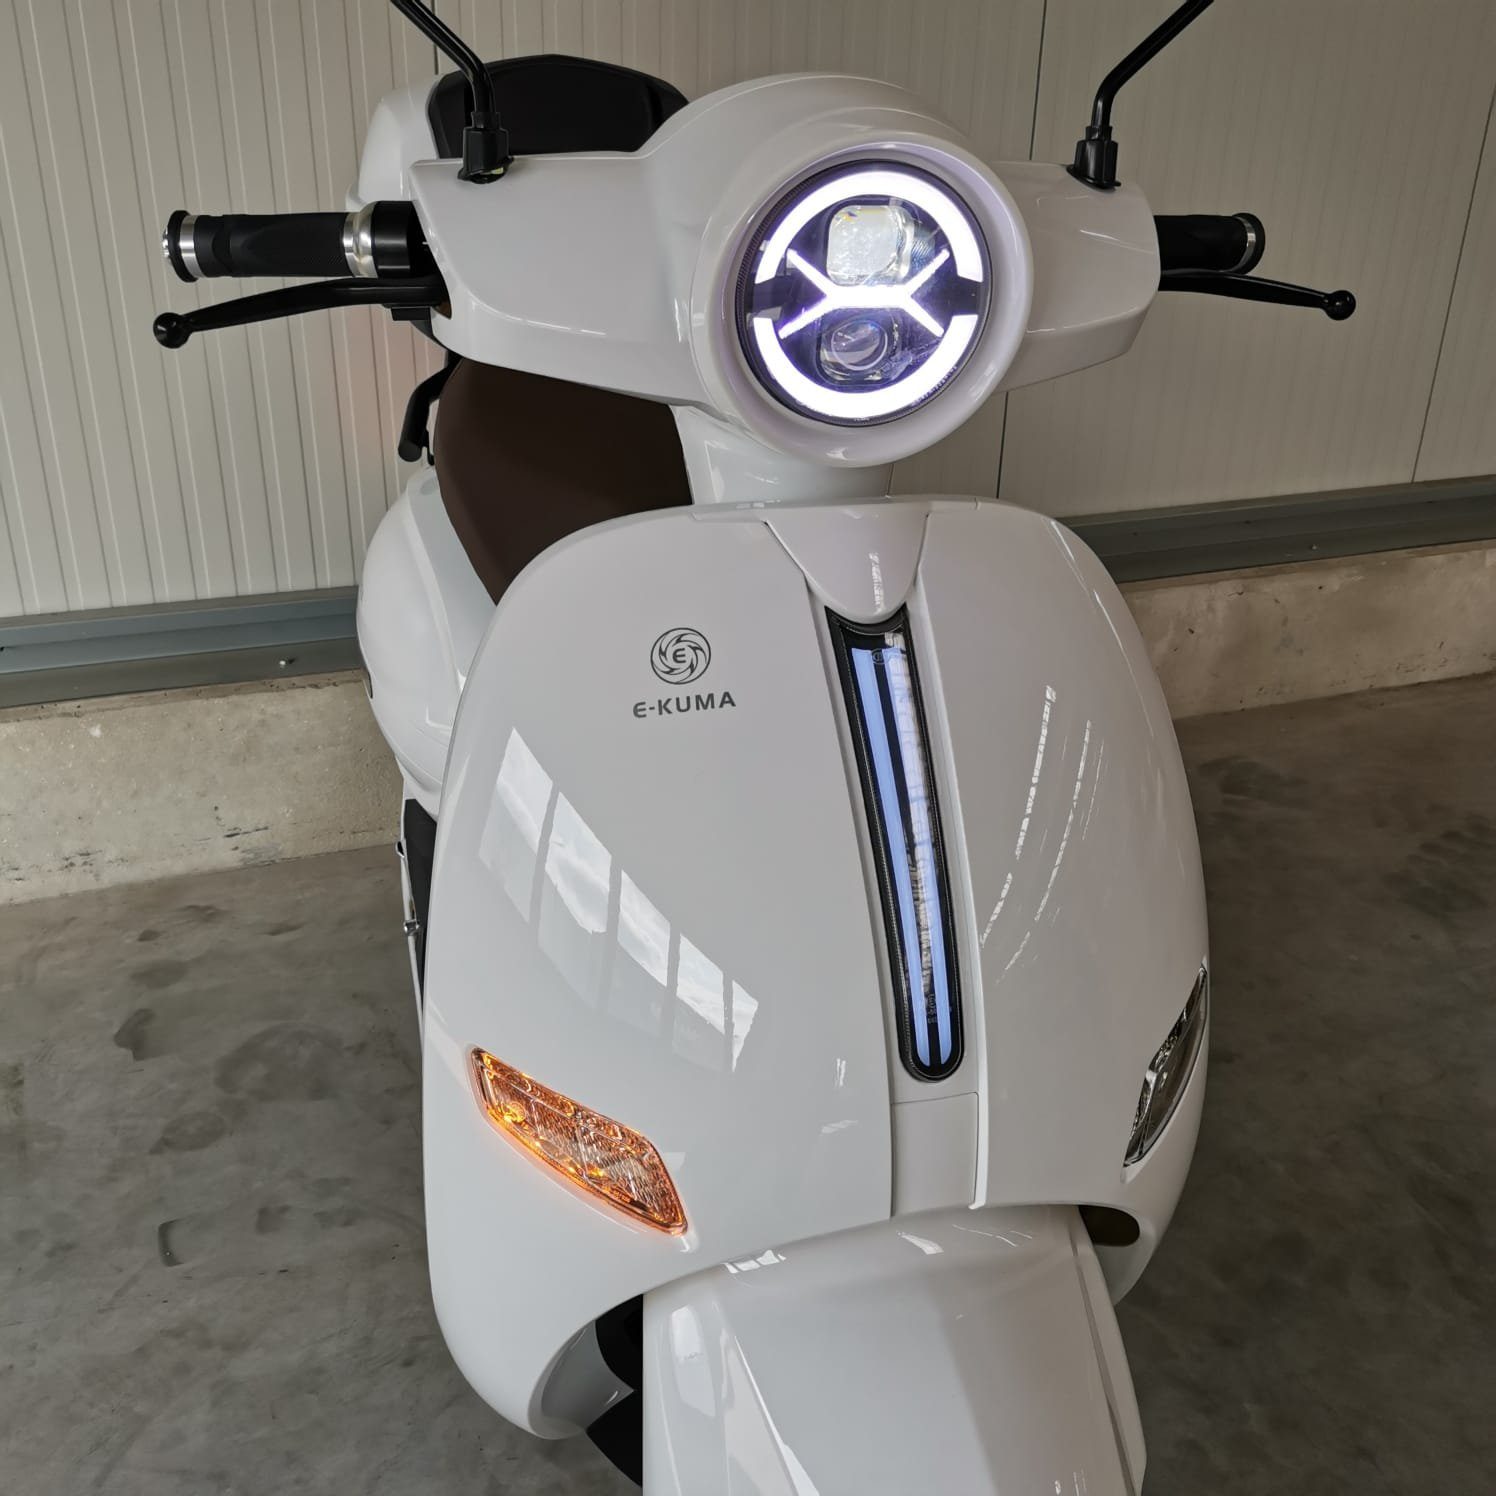 e-kuma E-Motorroller Sun-S+, 8000,00 mattschwarz W, inklusive km/h, Topcase 90